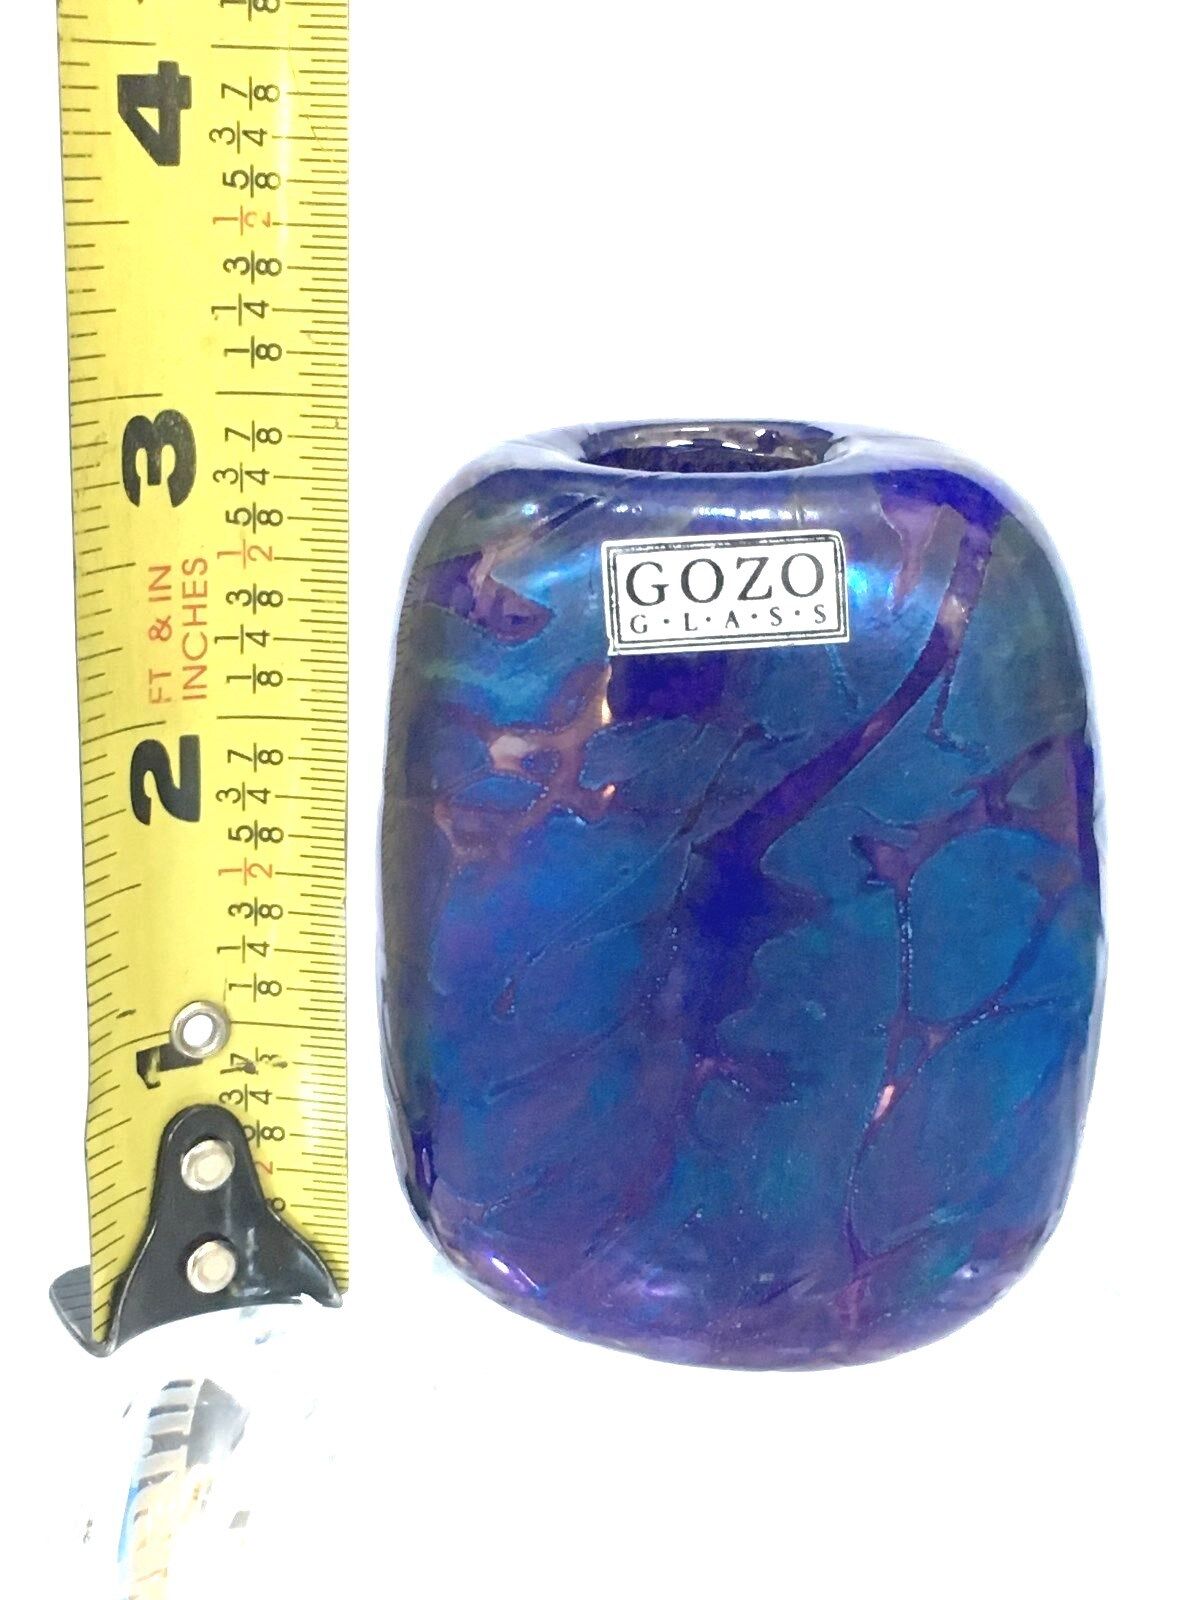 SIGNED GOZO GLASS BLUE VASE 